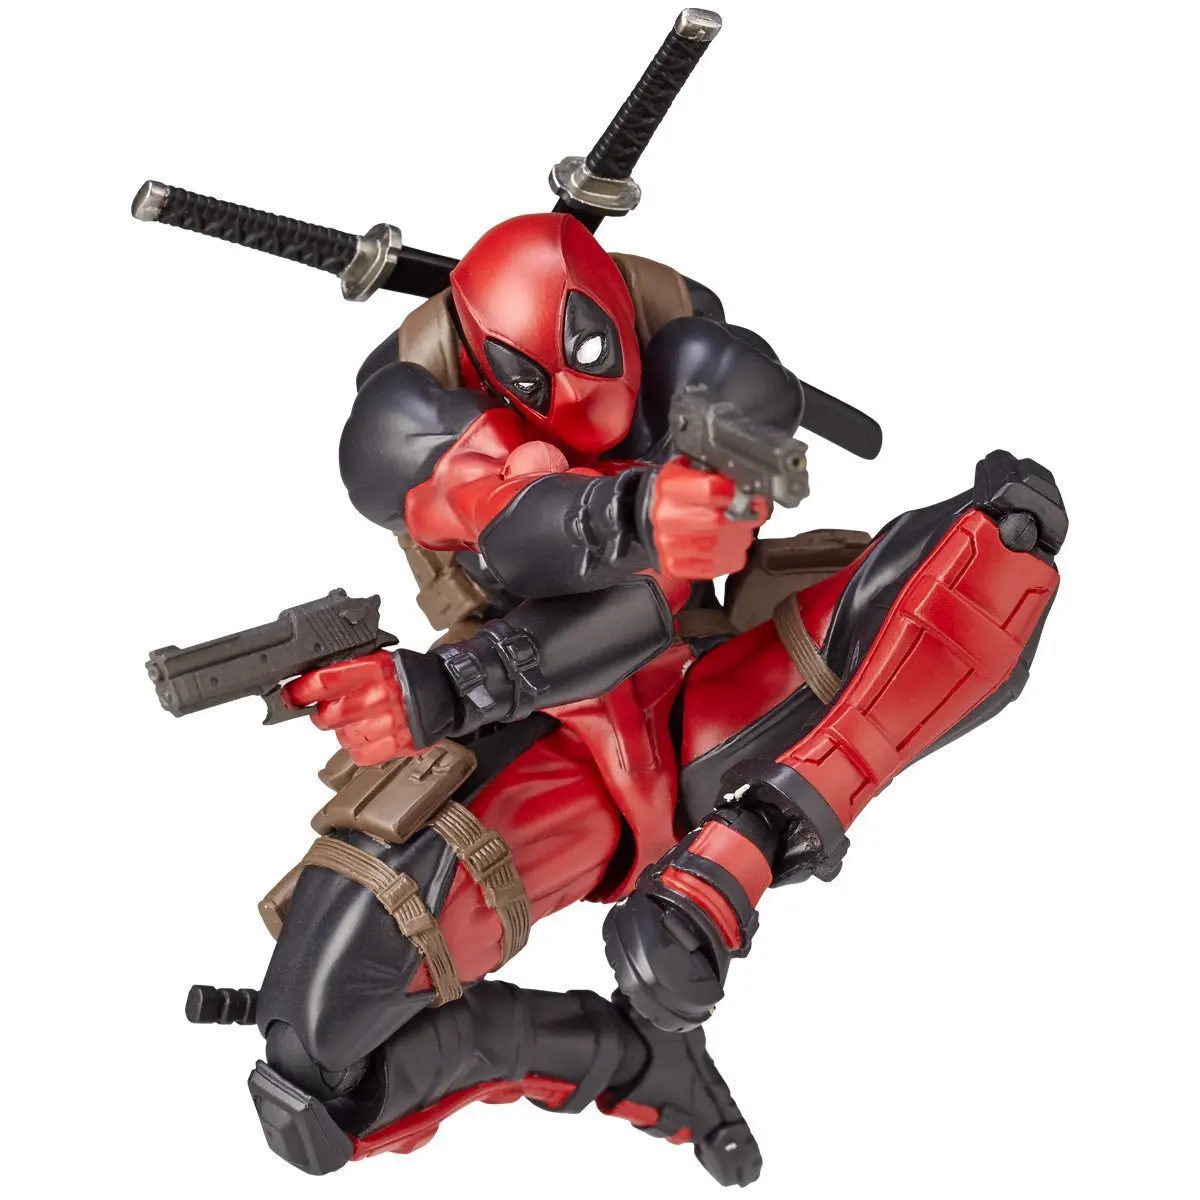 

Фигурка Red Marvel Deadpool X-Men, модель шарнирной игрушки с подвижным лицом Дэдпула, меняющая лицо, украшение, кукла